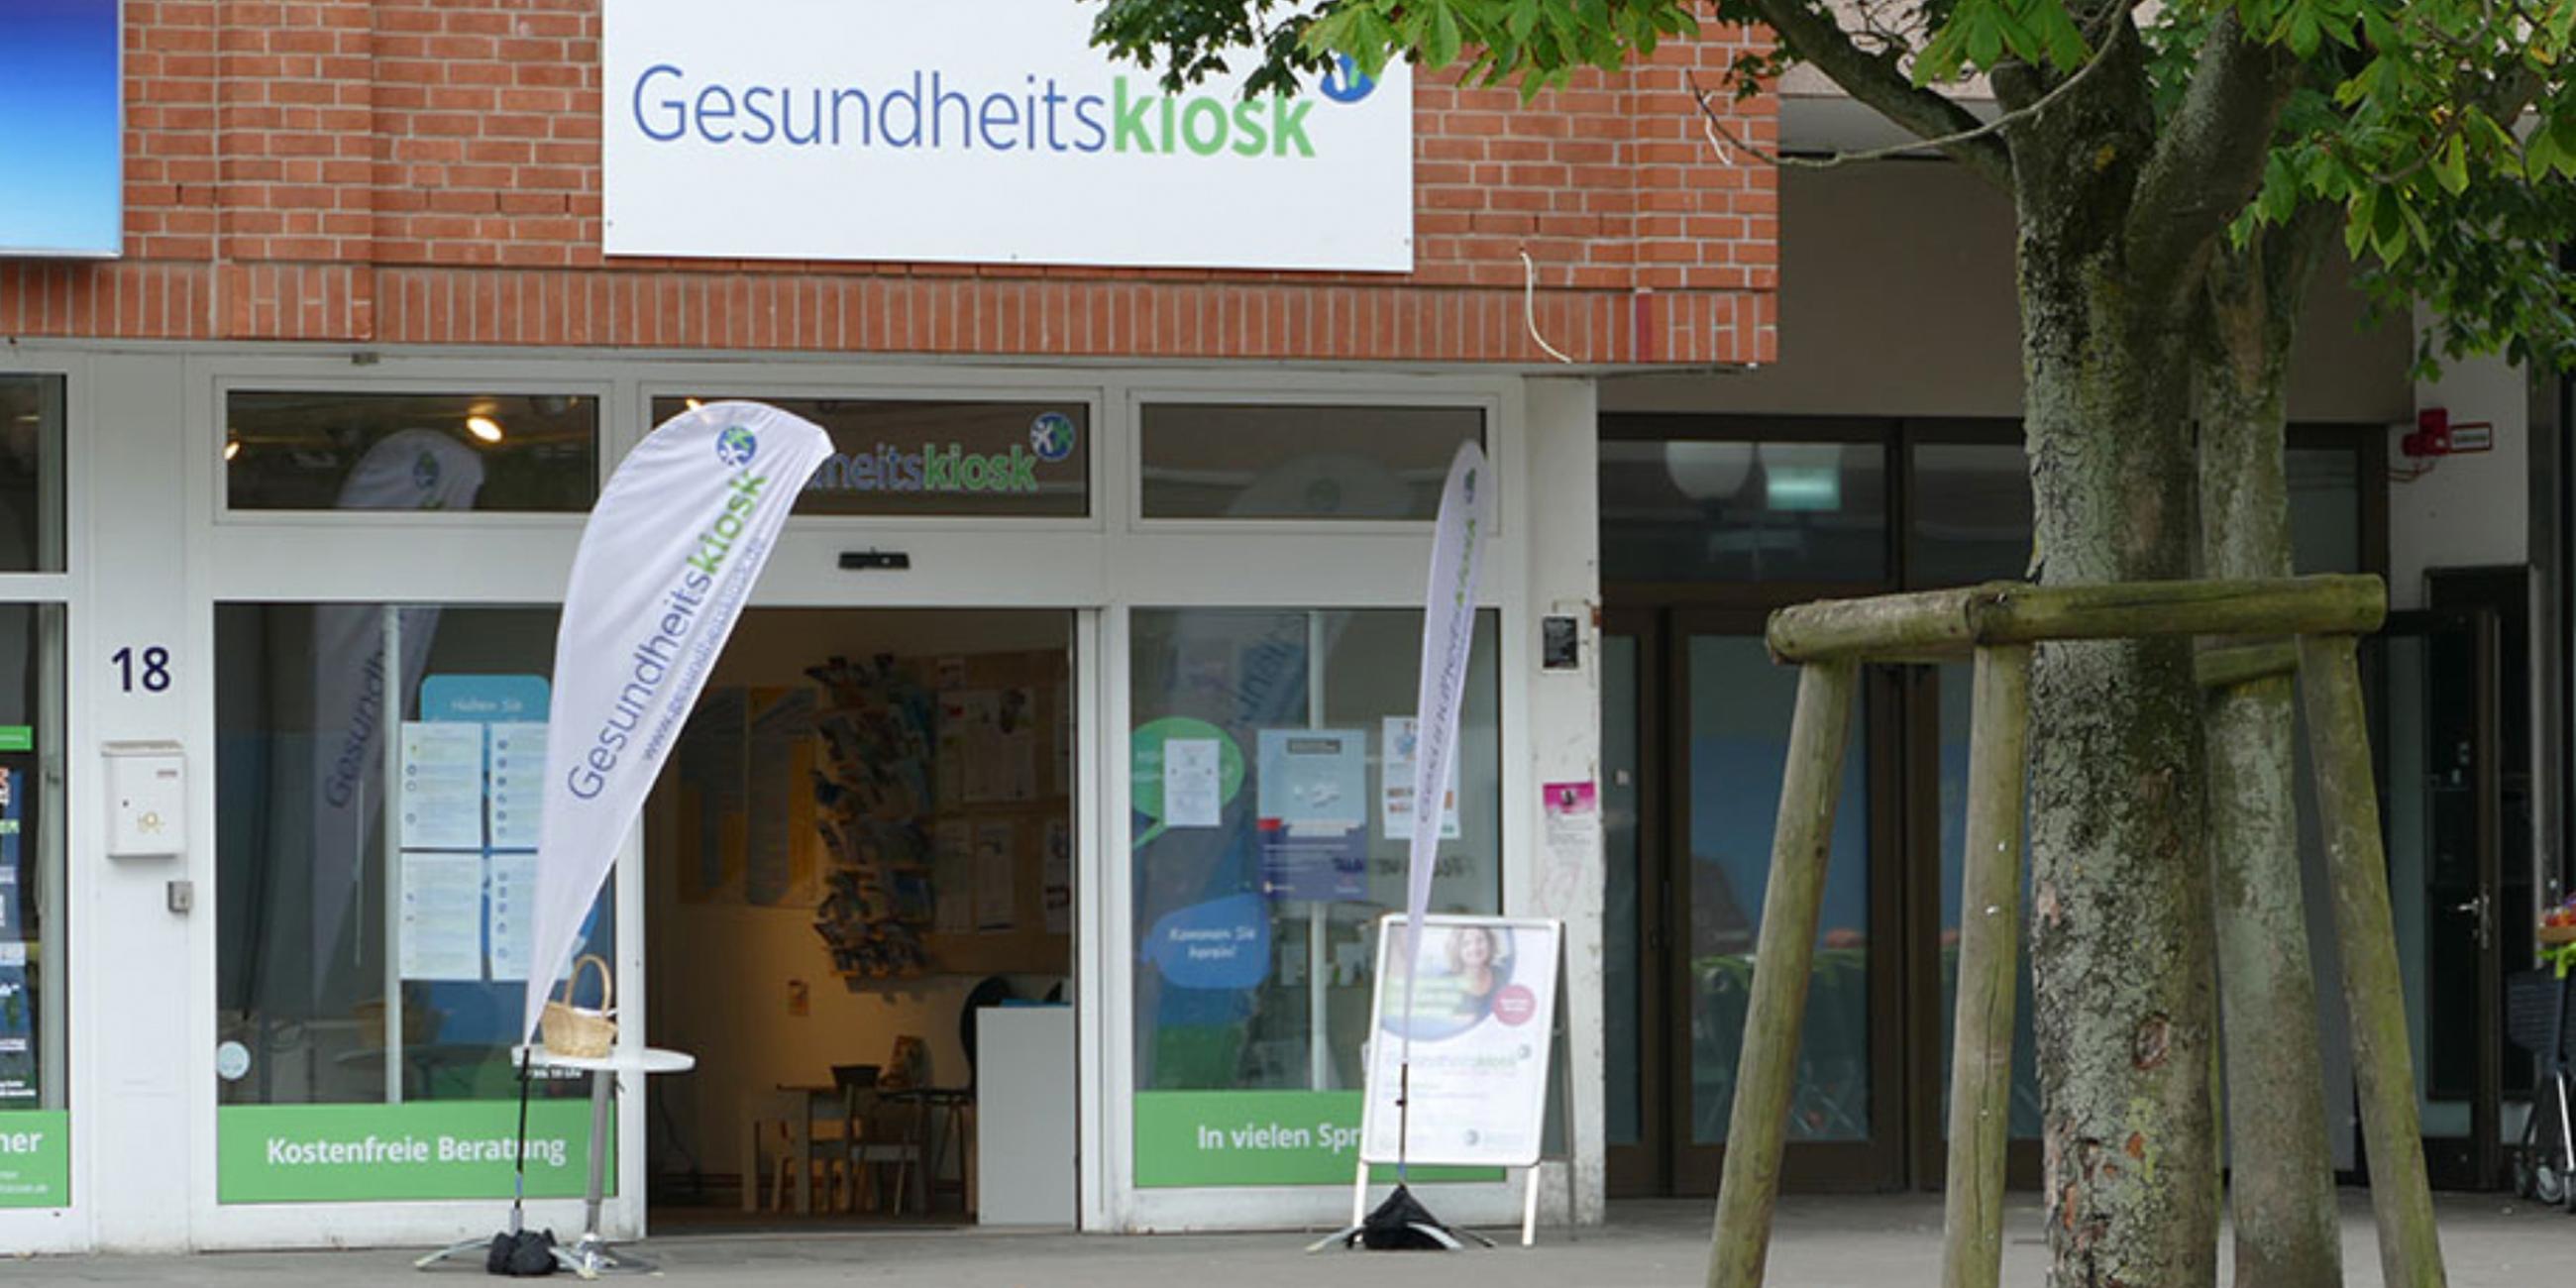 Gesundheitskiosk des Hamburger Stadtteils Billstedt